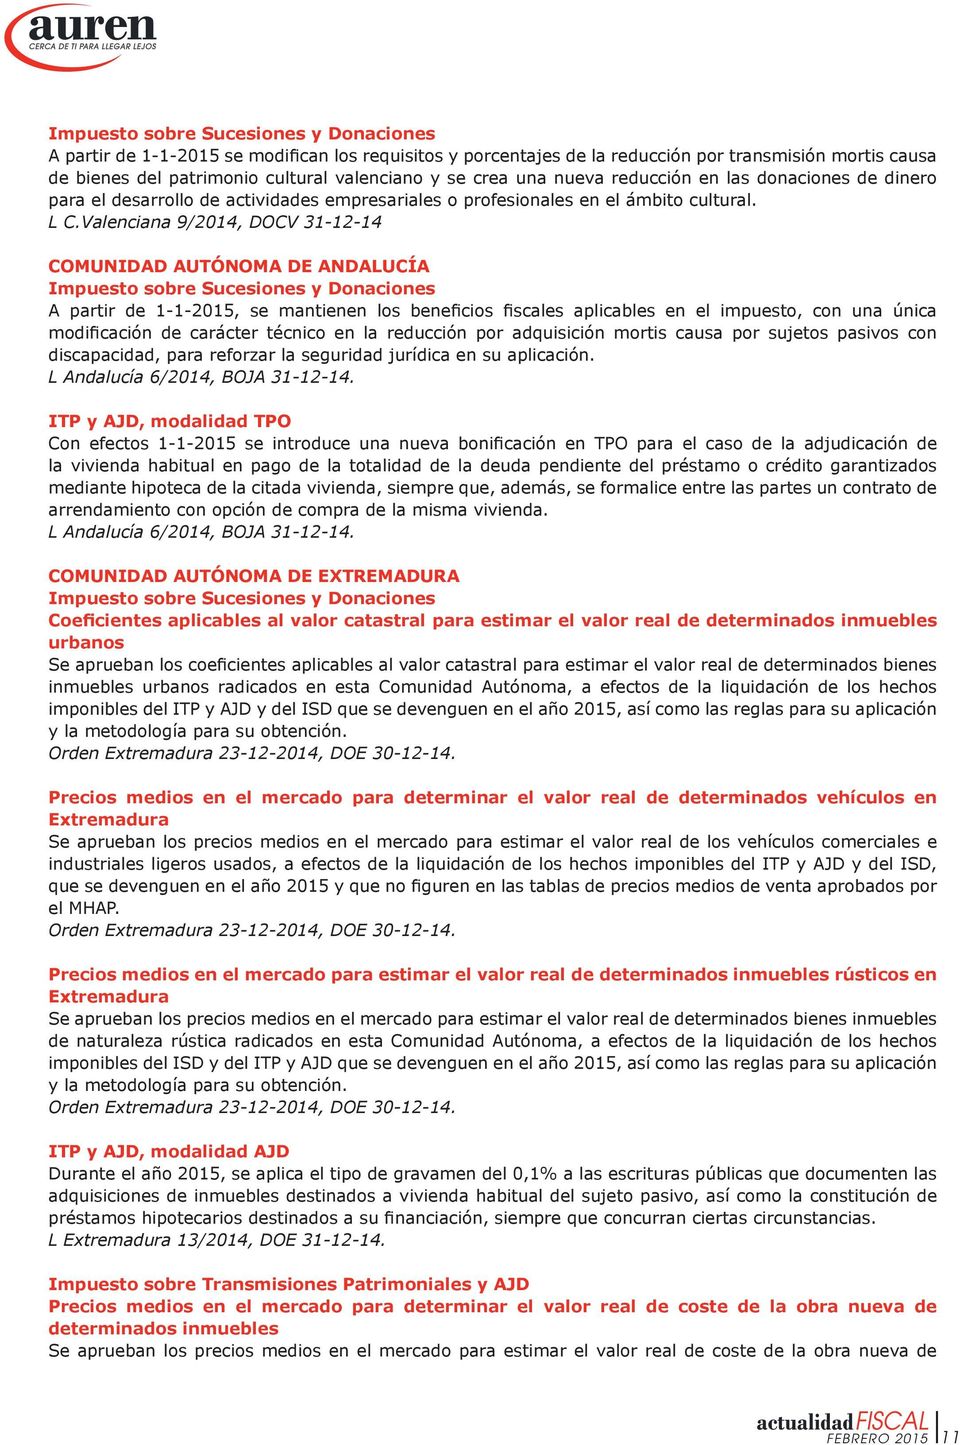 Valenciana 9/2014, DOCV 31-12-14 COMUNIDAD AUTÓNOMA DE ANDALUCÍA Impuesto sobre Sucesiones y Donaciones A partir de 1-1-2015, se mantienen los beneficios fiscales aplicables en el impuesto, con una